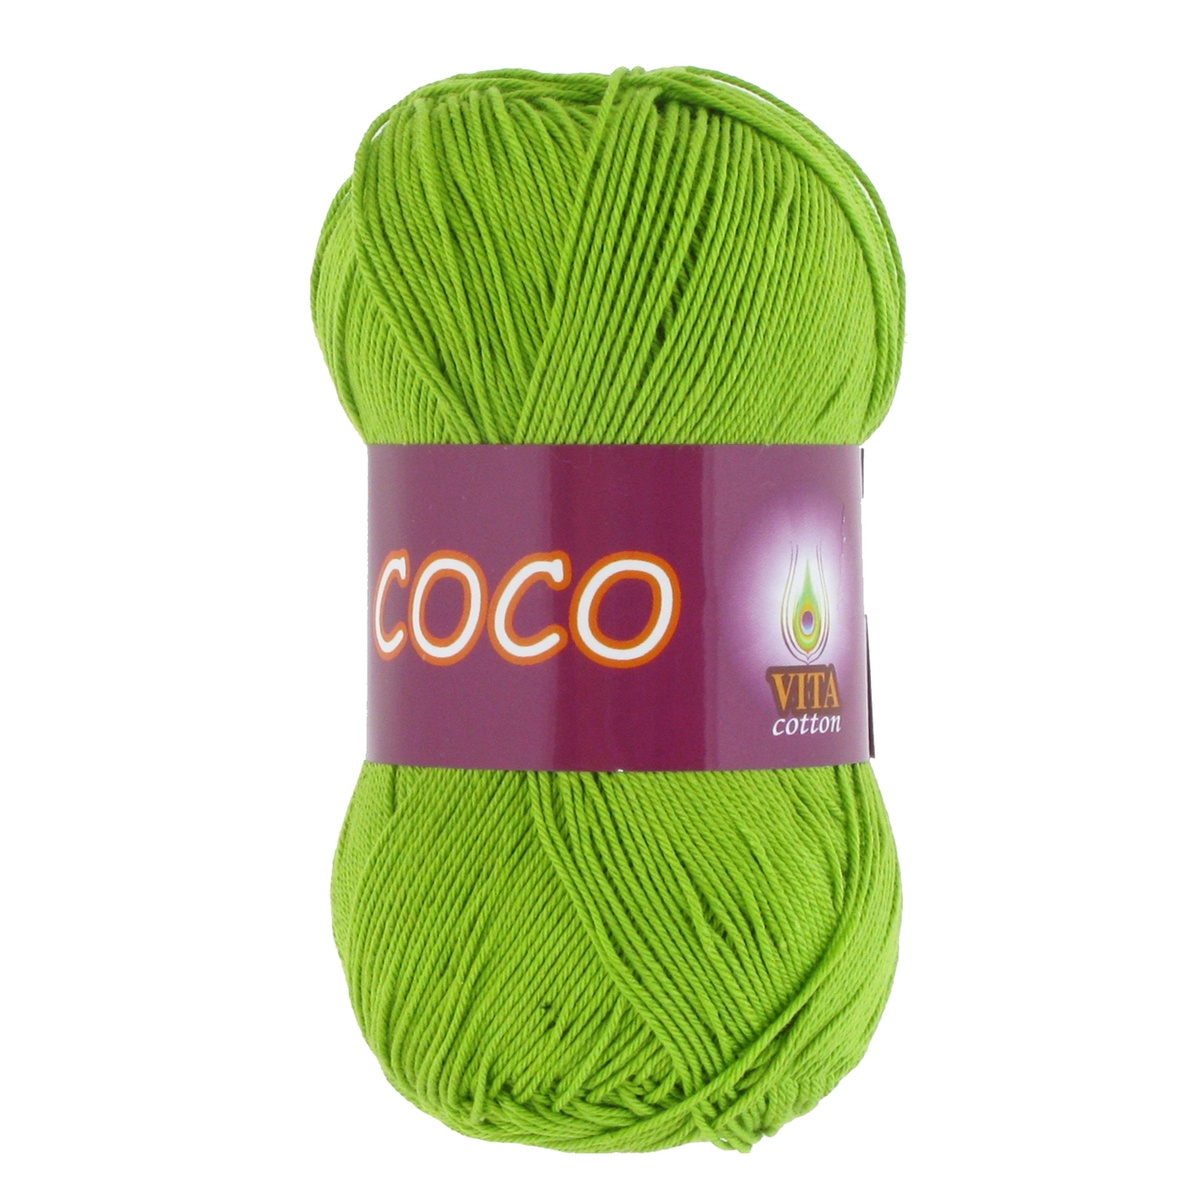 Пряжа для вязания VITA Coco, 10 шт, цвет: зеленый, состав: 100% Хлопок, 50 гр/240 м  #1